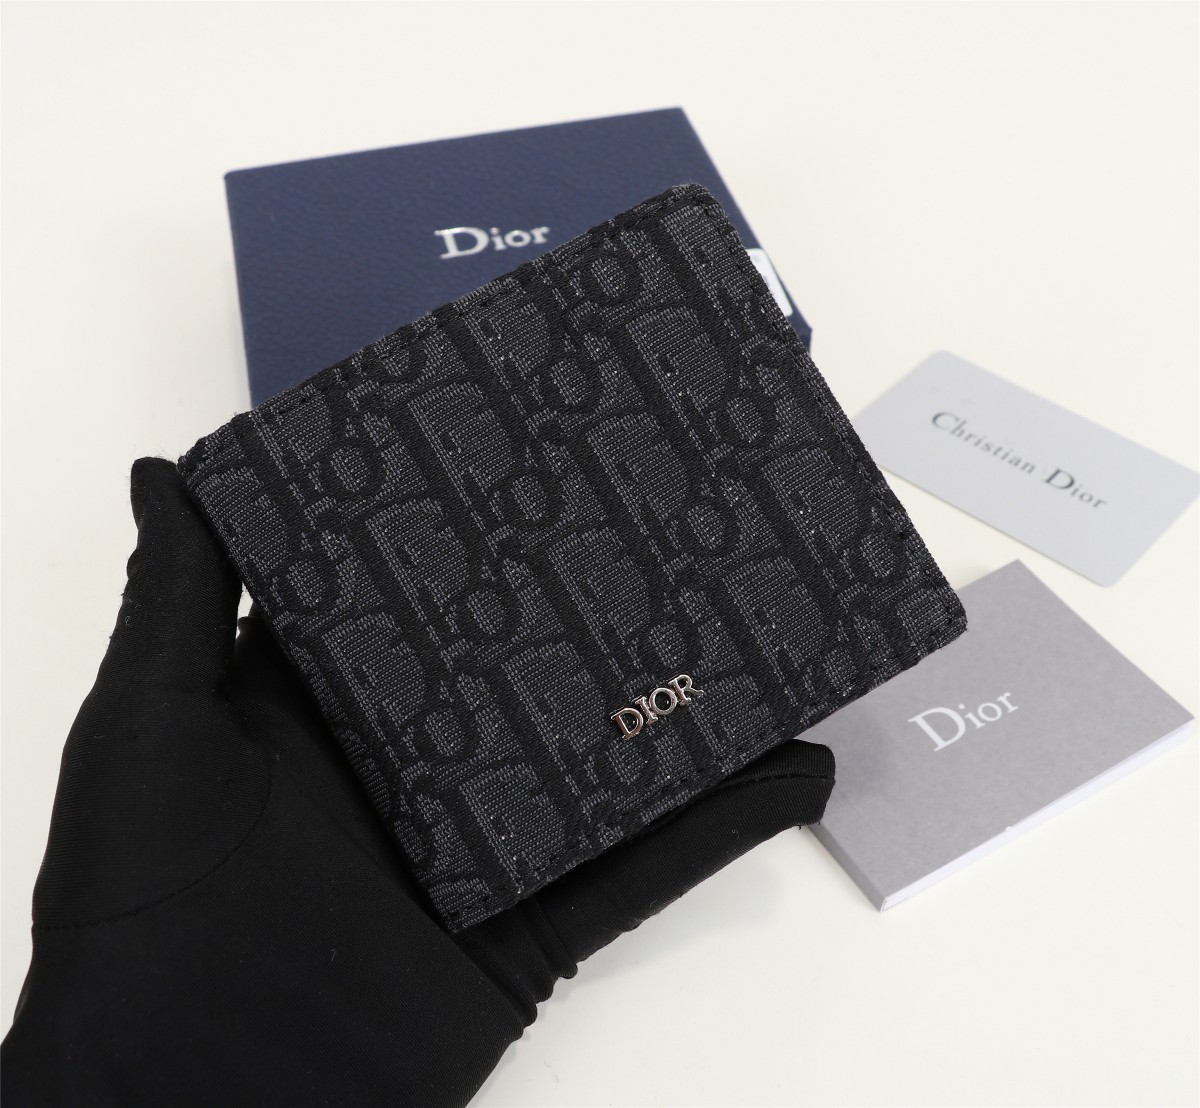 Ví nam Dior siêu cấp Like Auth 11 chuẩn Authentic hàng nhập khẩu